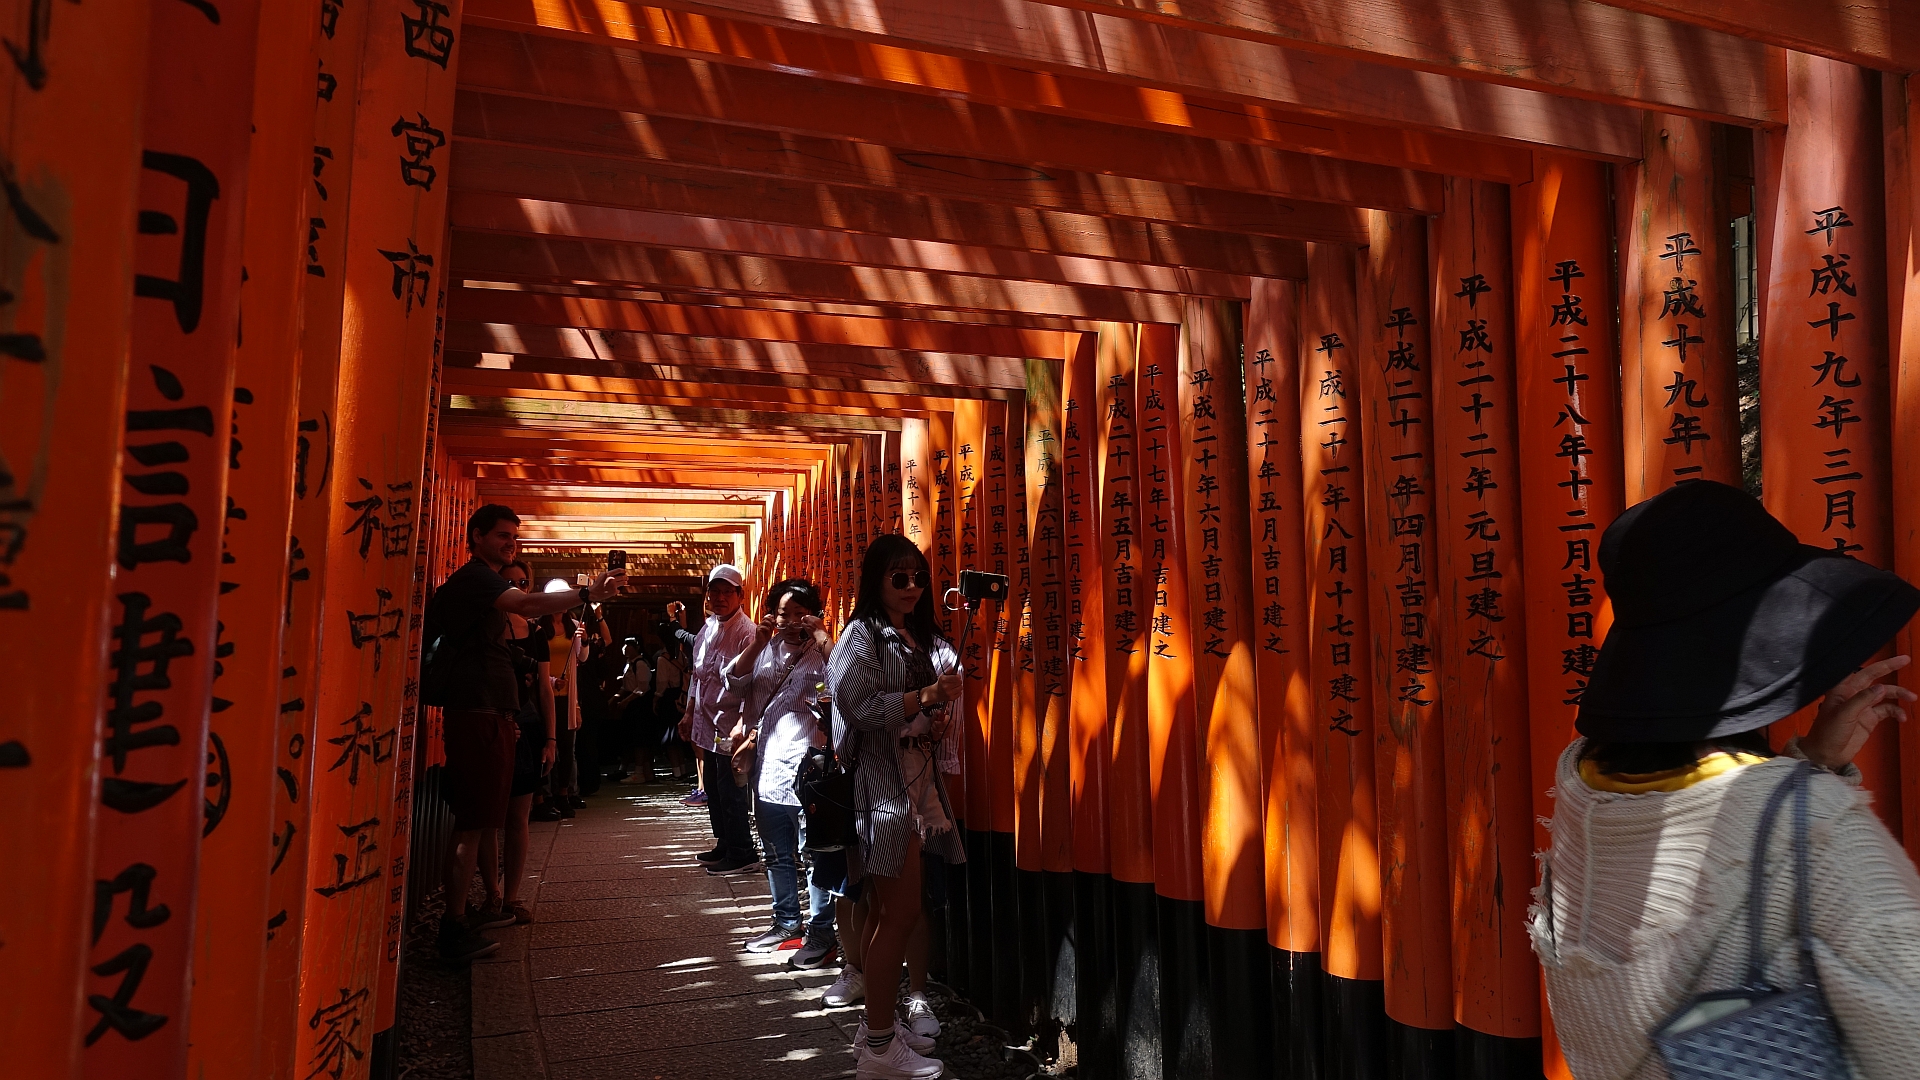 Leer ist es bei japanischen Sehenswürdigkeiten nirgendwo : Fushimi Inari Schrein in Kyoto